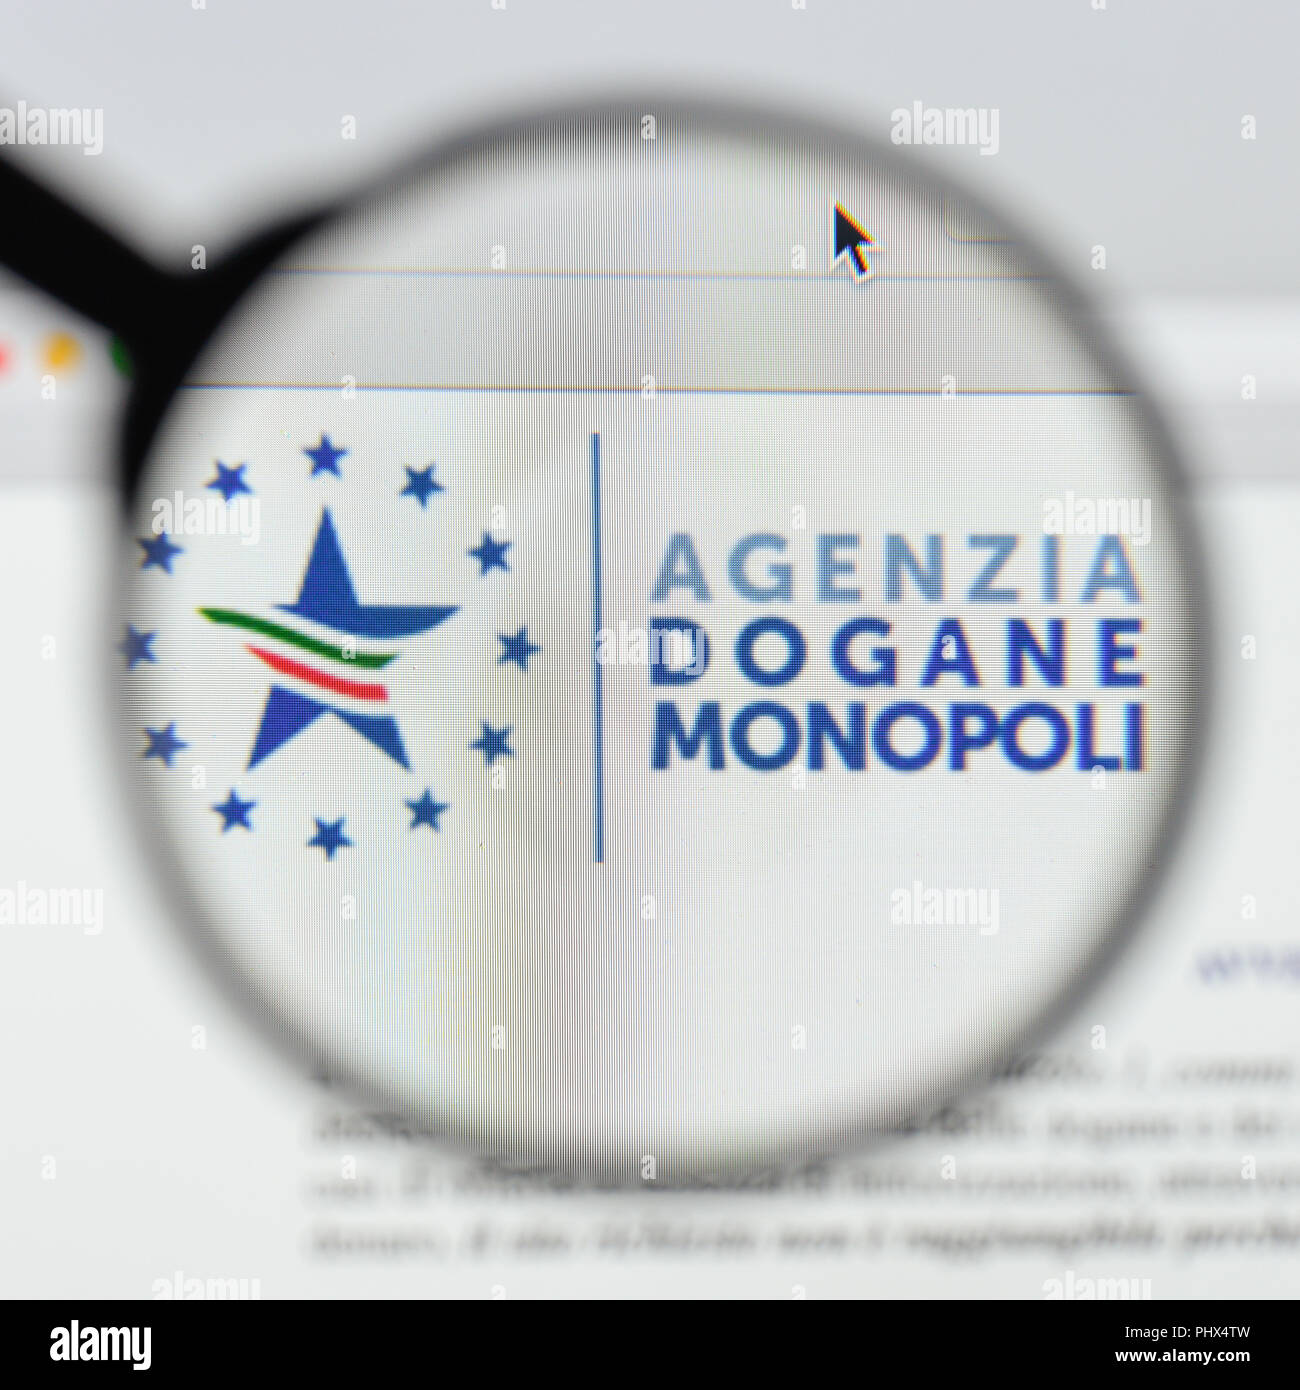 Milan, Italy - August 20, 2018: agenzia dogane e monopoli website homepage. agenzia dogane e monopoli logo visible. Stock Photo